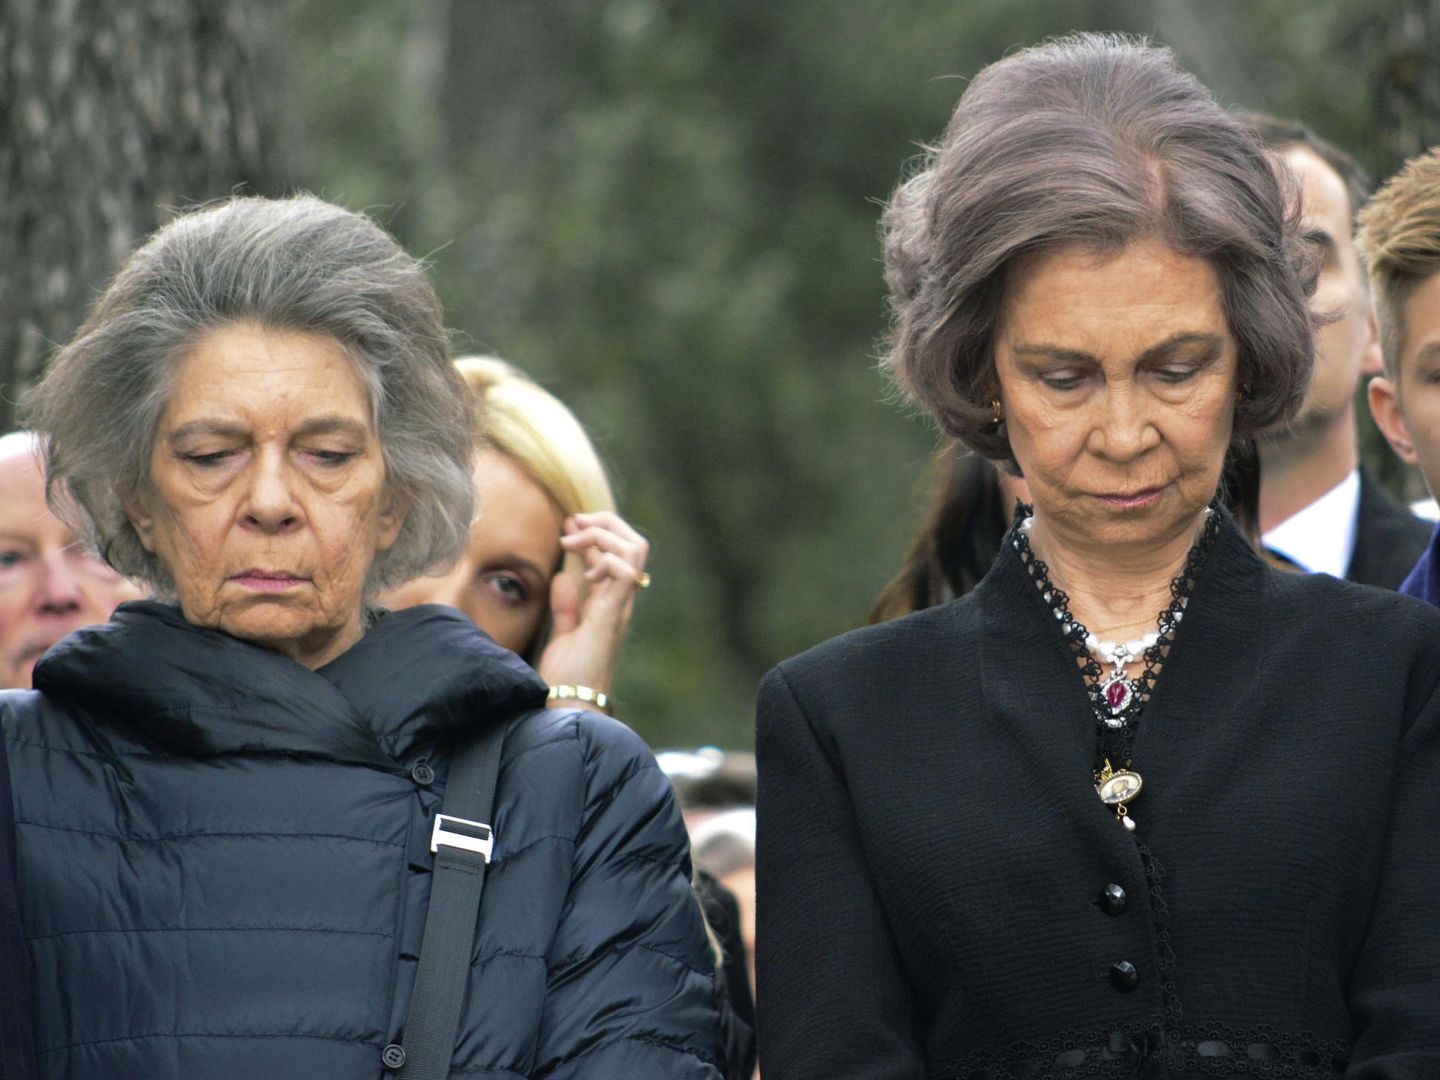 La reina Sofía y su hermana Irene, rindiendo homenaje al rey Pablo I en un acto celebrado en el cementerio real del palacio de Tatoi. (EFE)